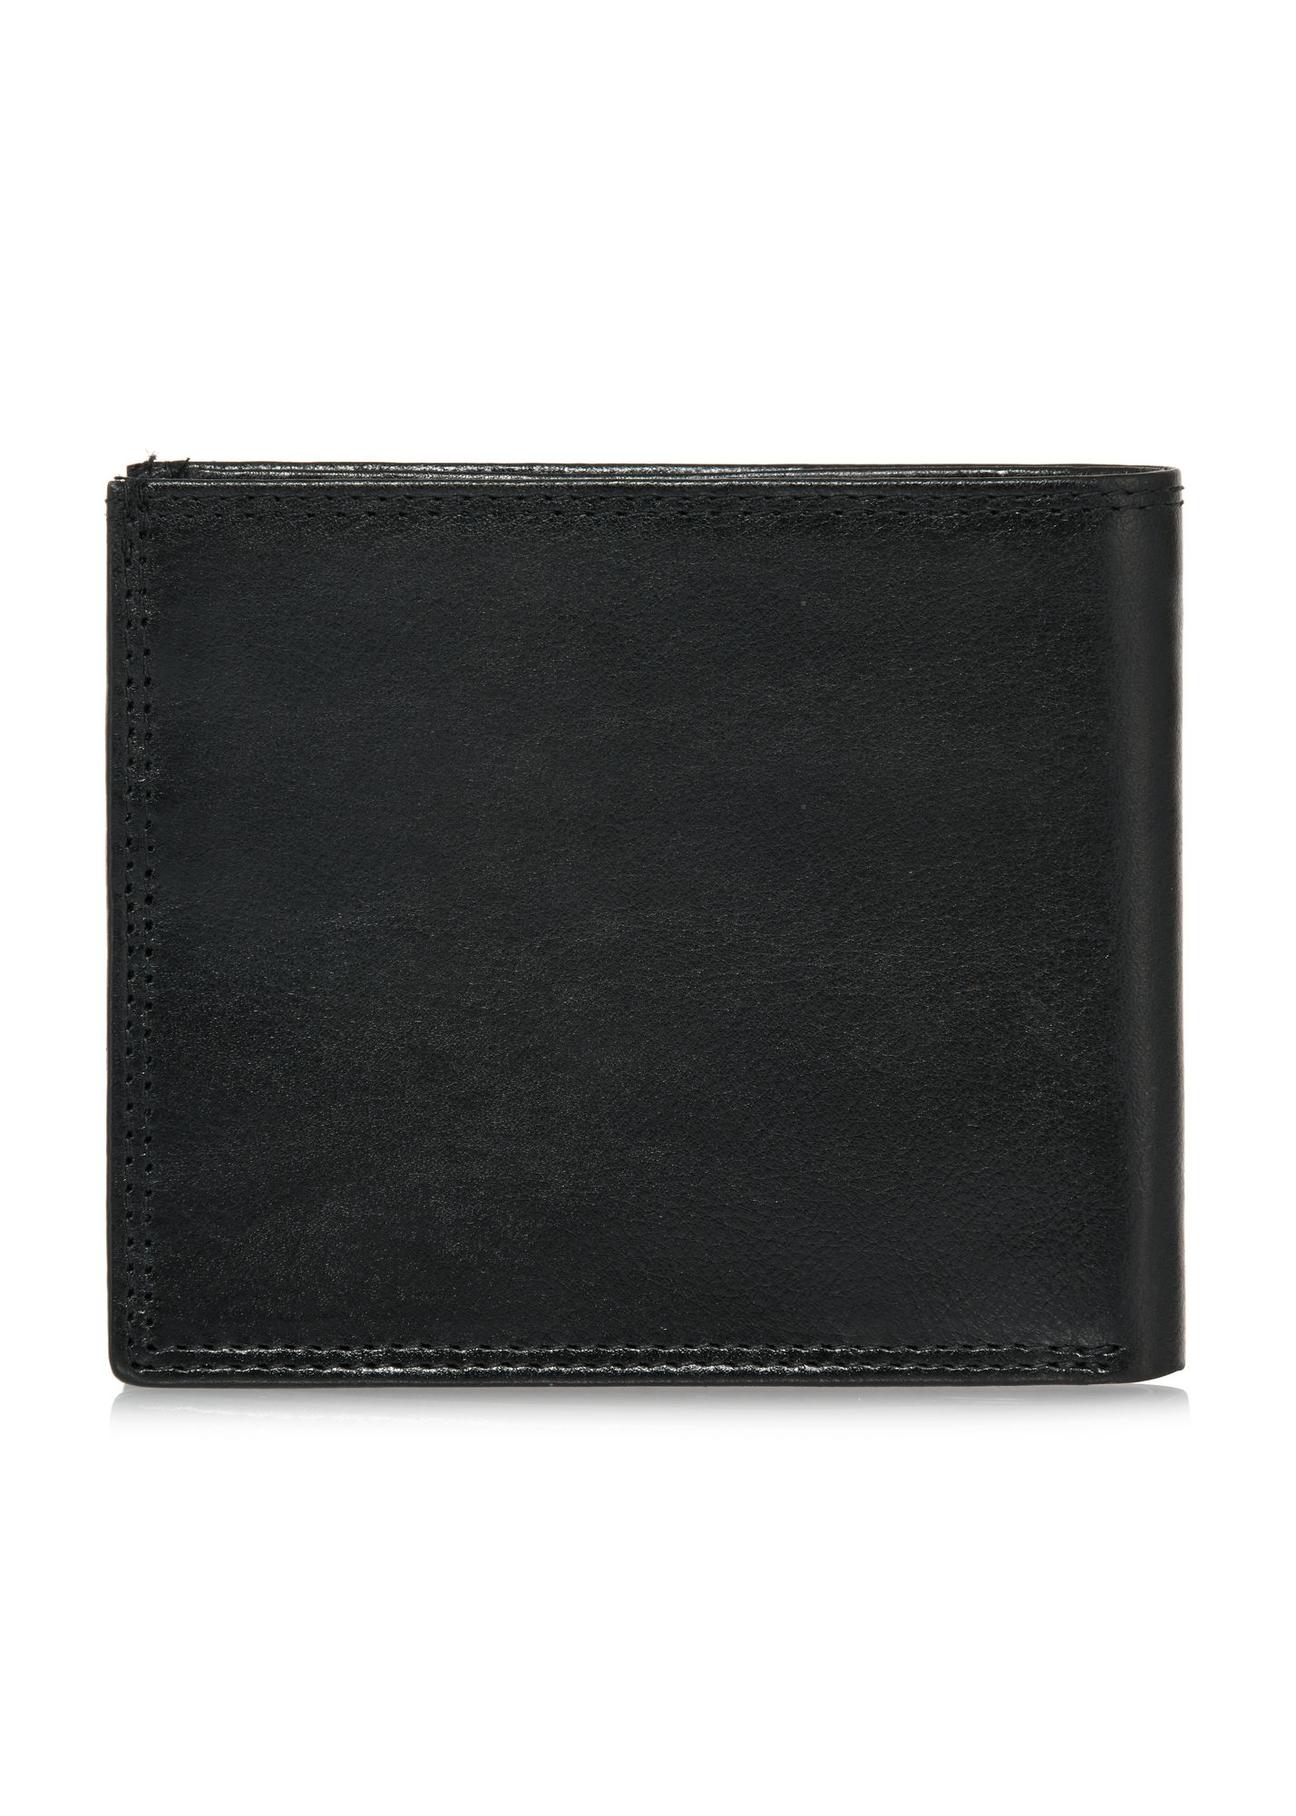 Niezapinany czarny skórzany portfel męski PORMS-0551-99(W24)